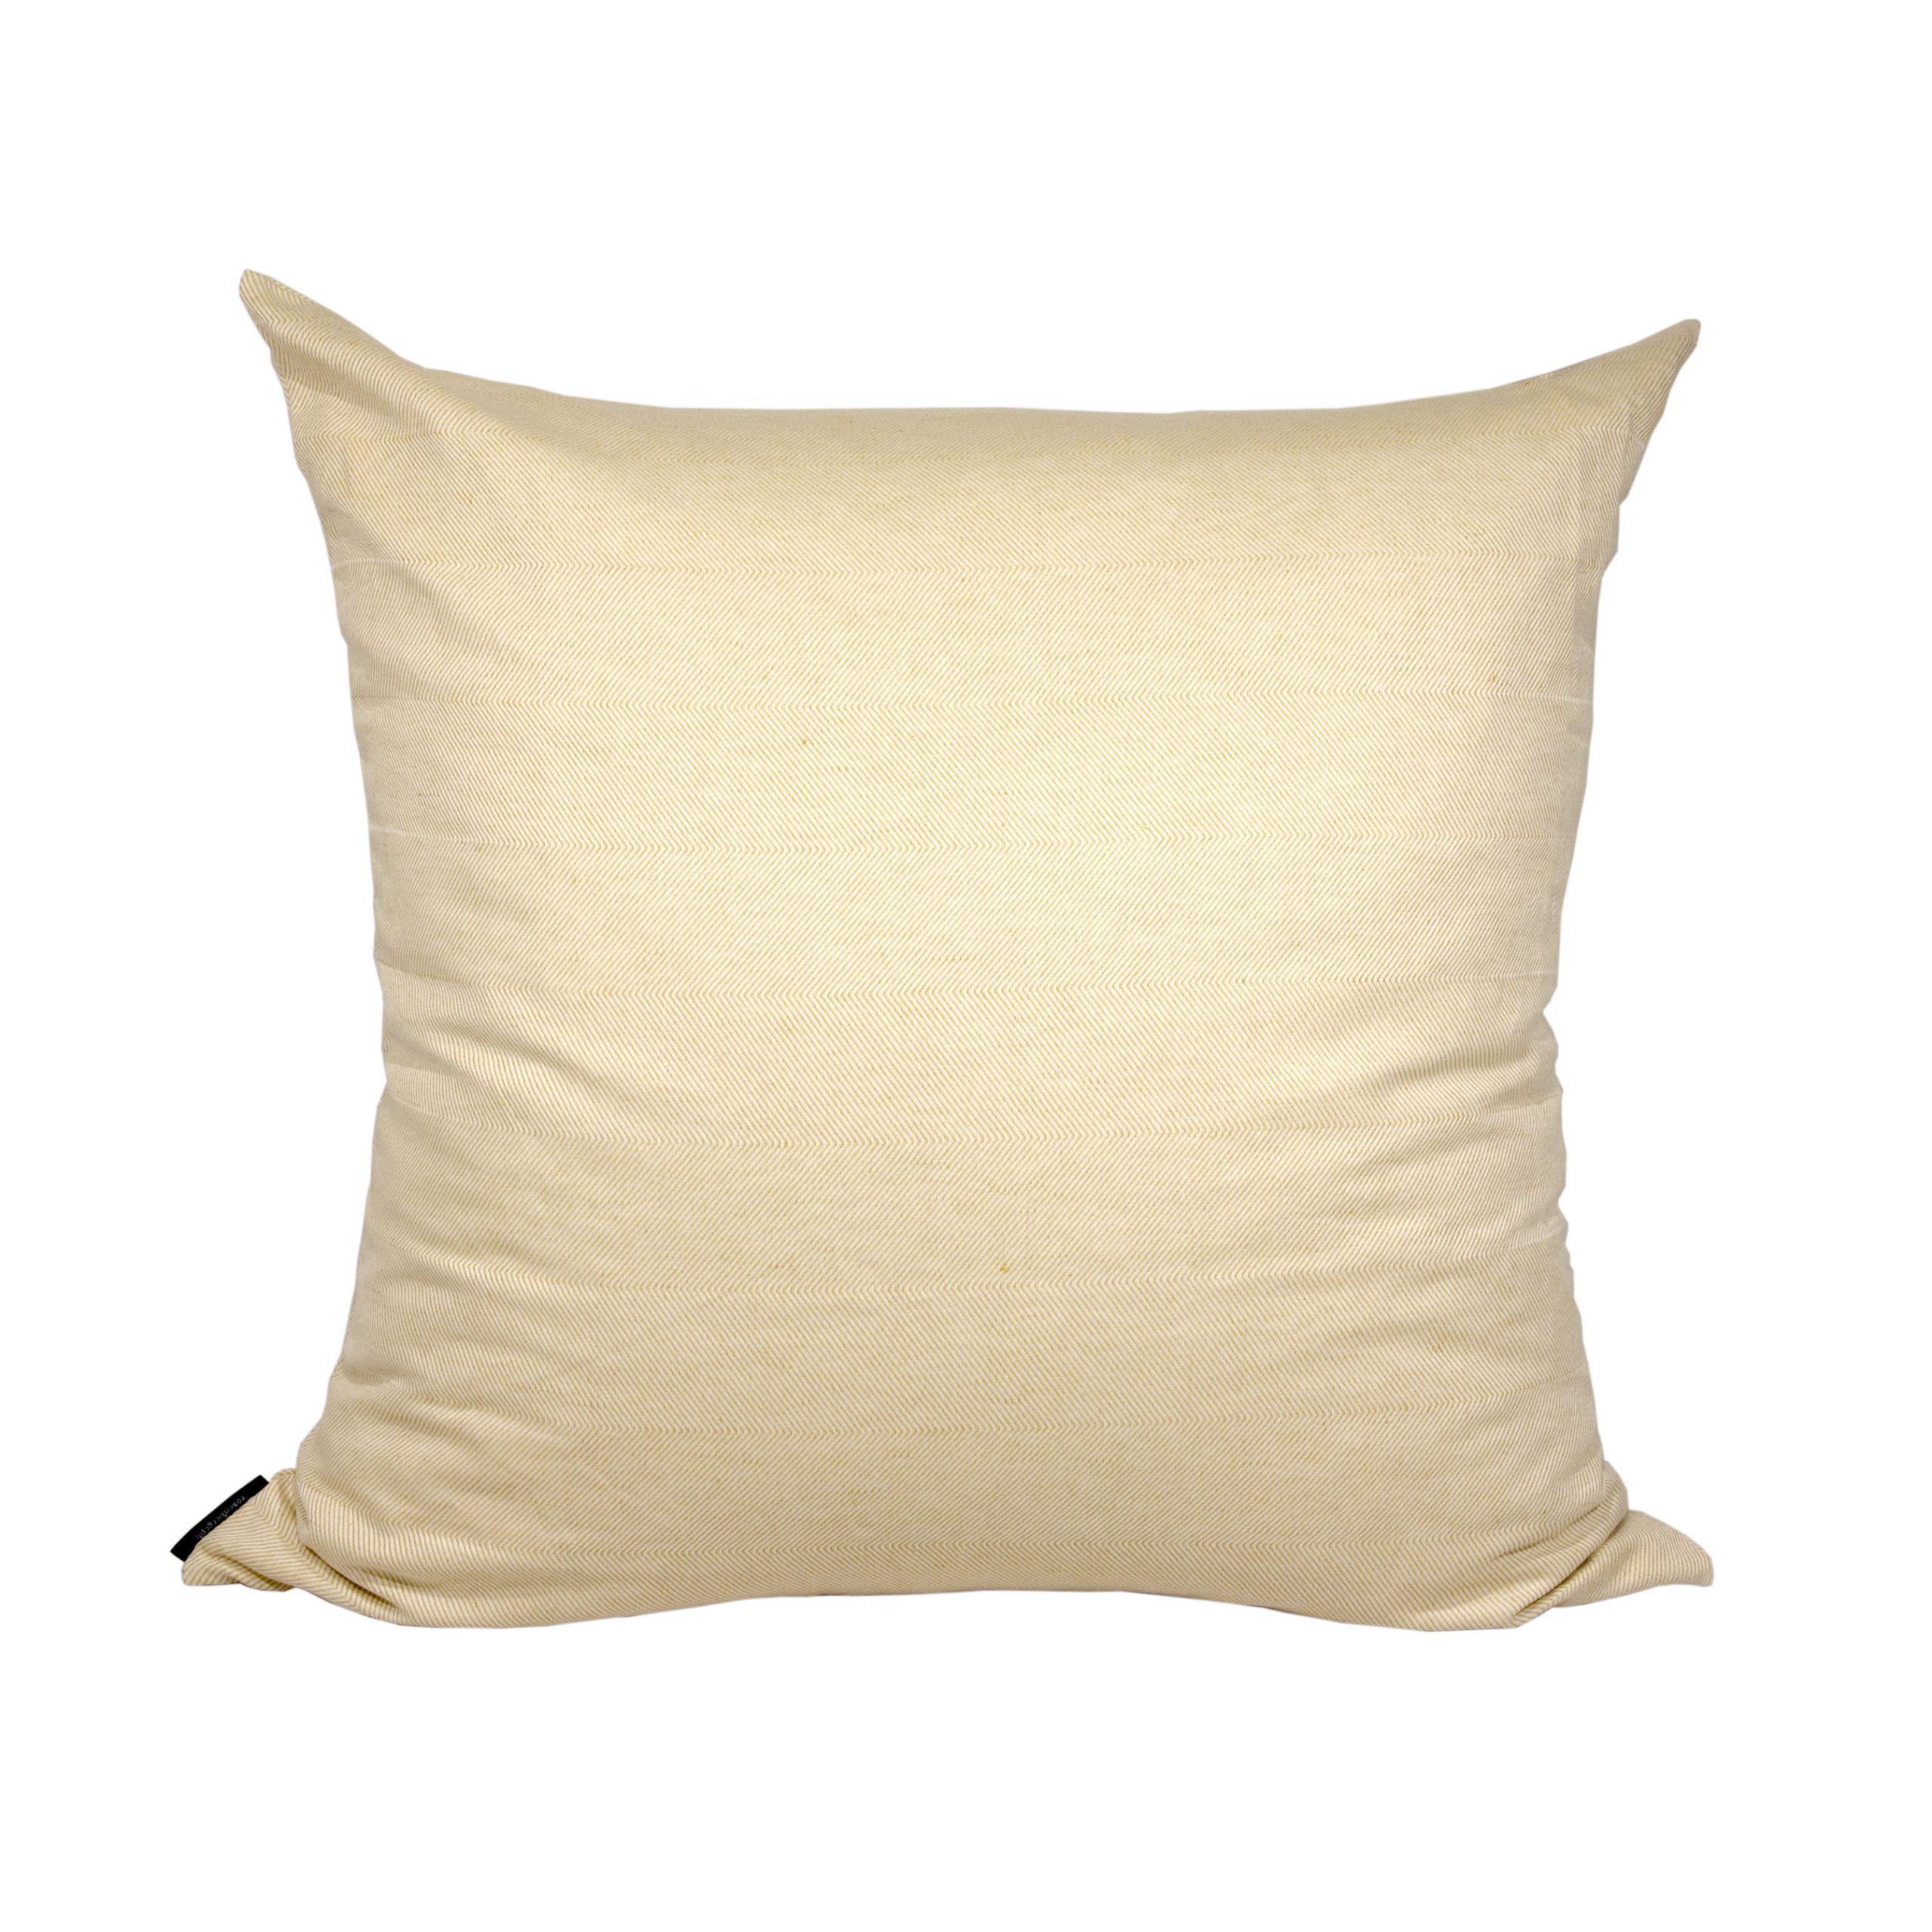 Floor cushion cover linen/cotton light hay yellow design by Anne Rosenberg, RosenbergCph